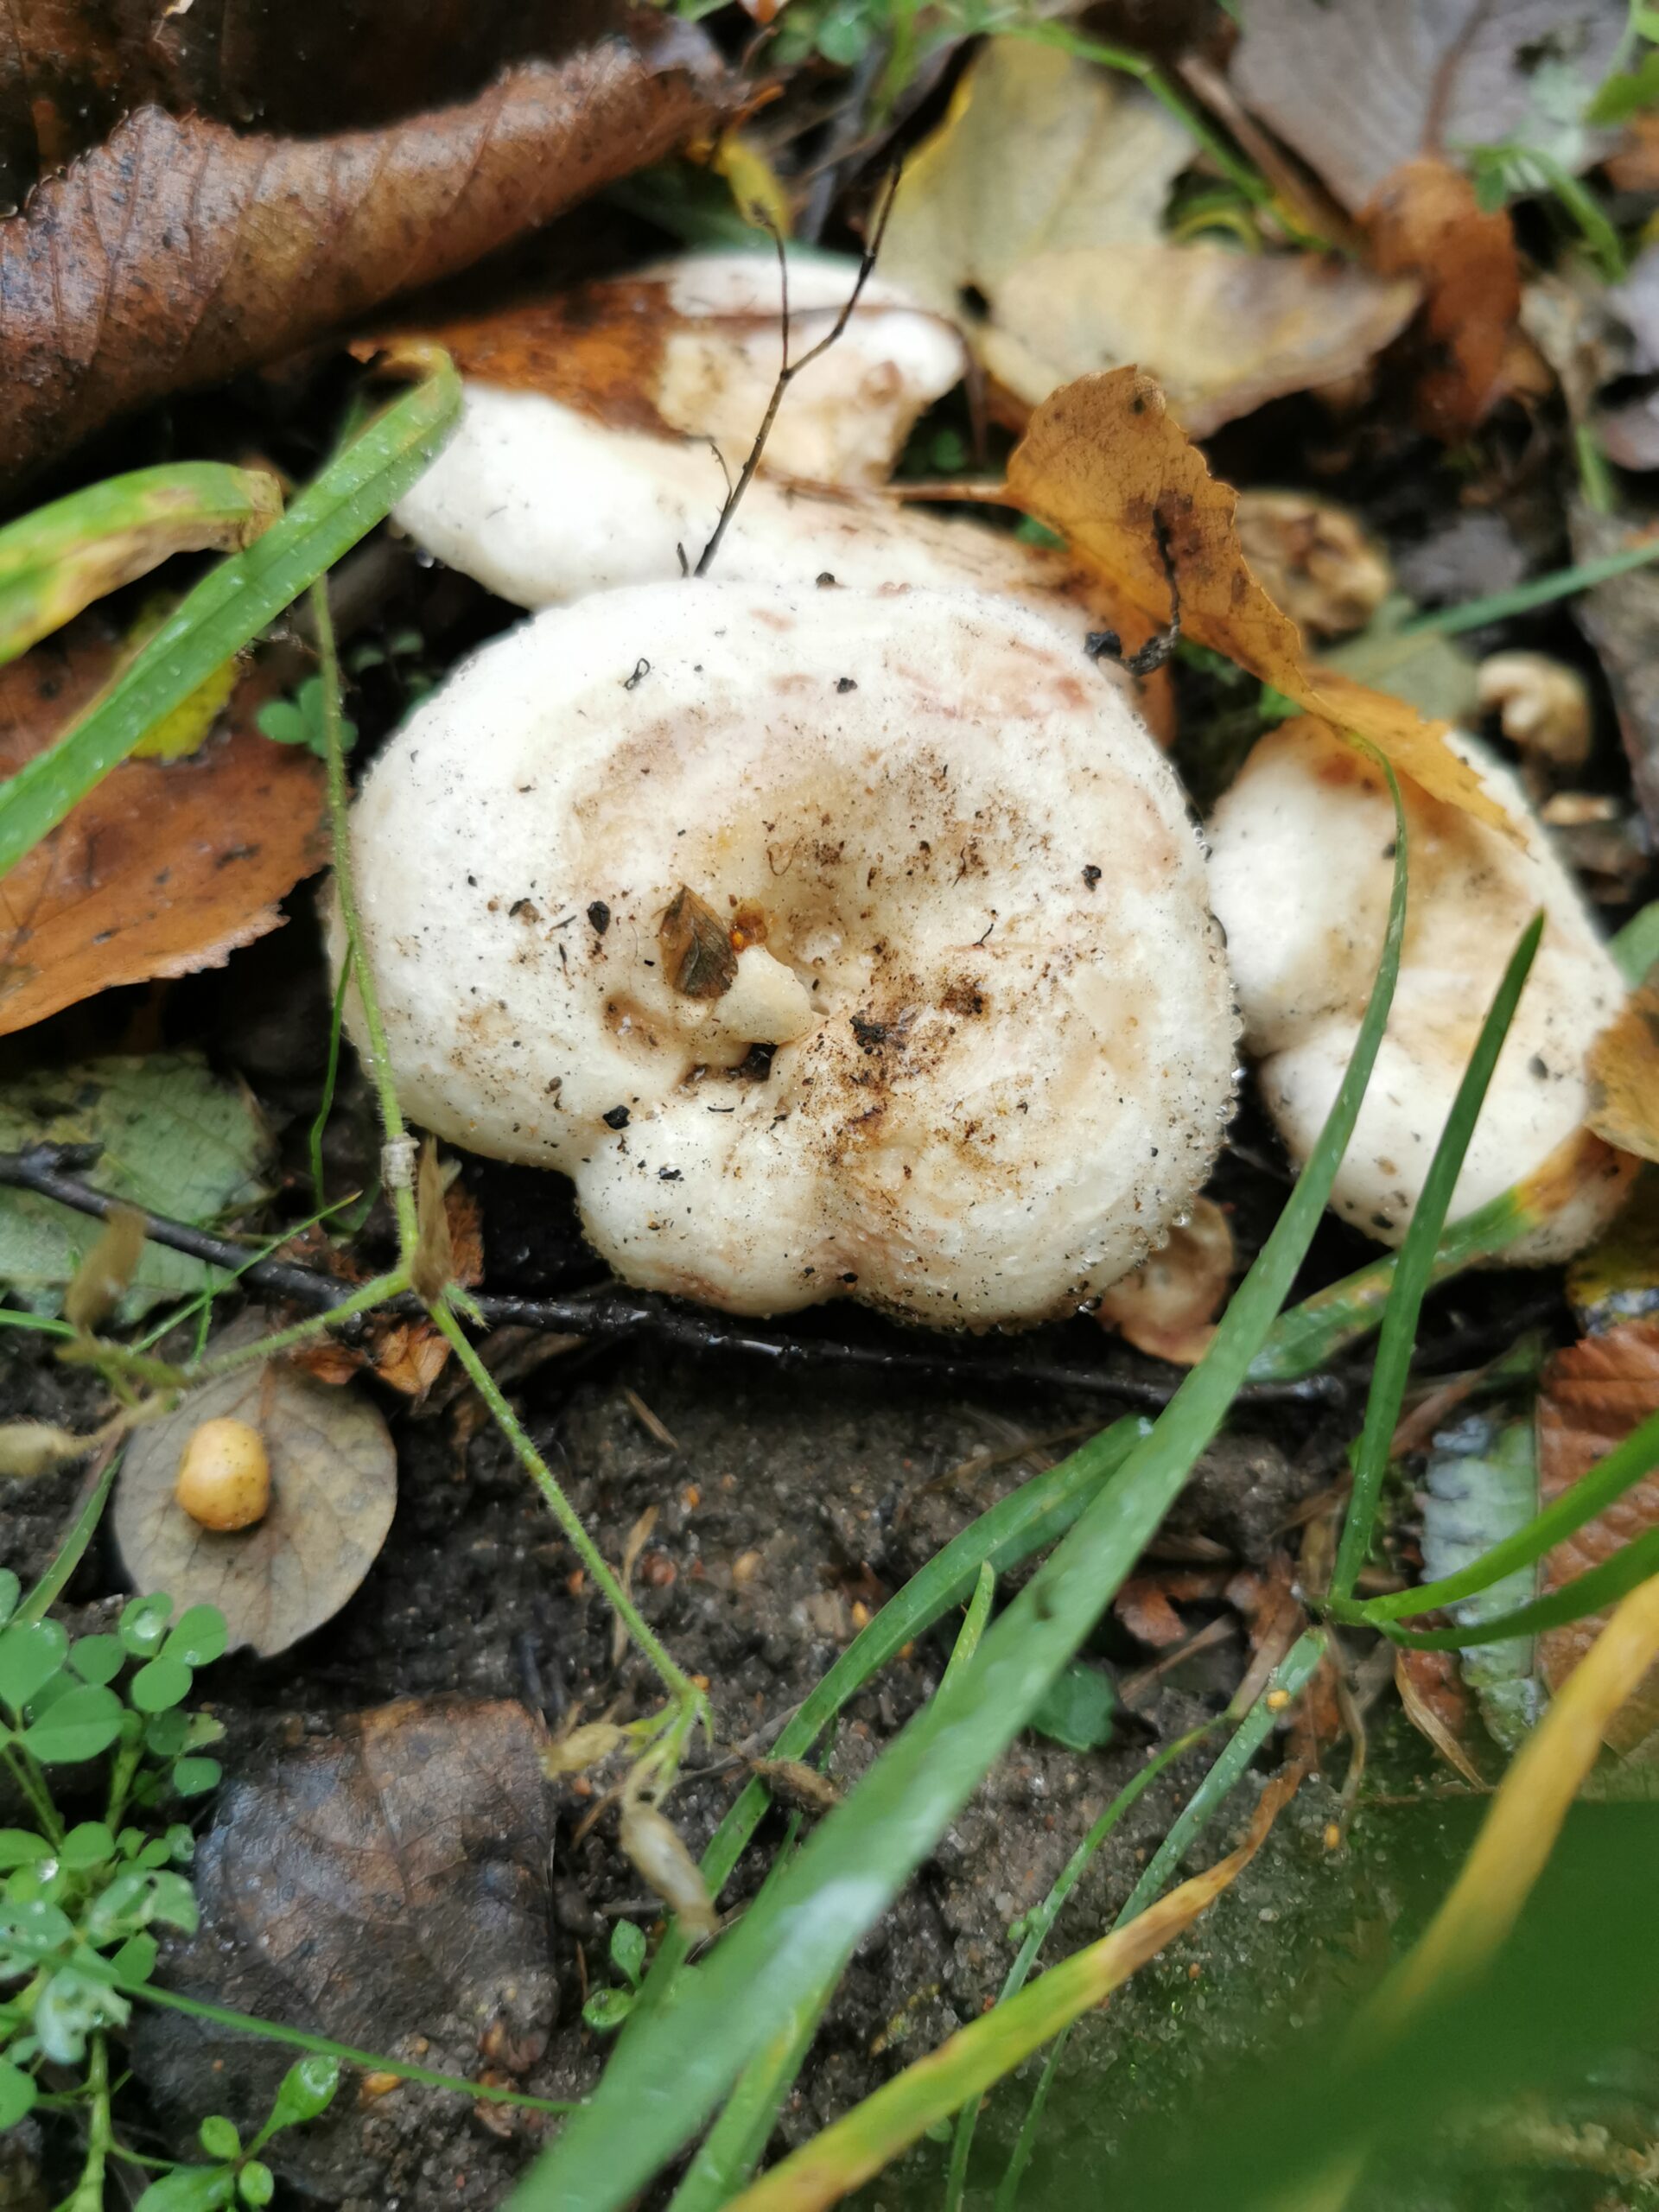 Den Nye Nordiske Diæt - rummer svampe og andet godt fra naturen